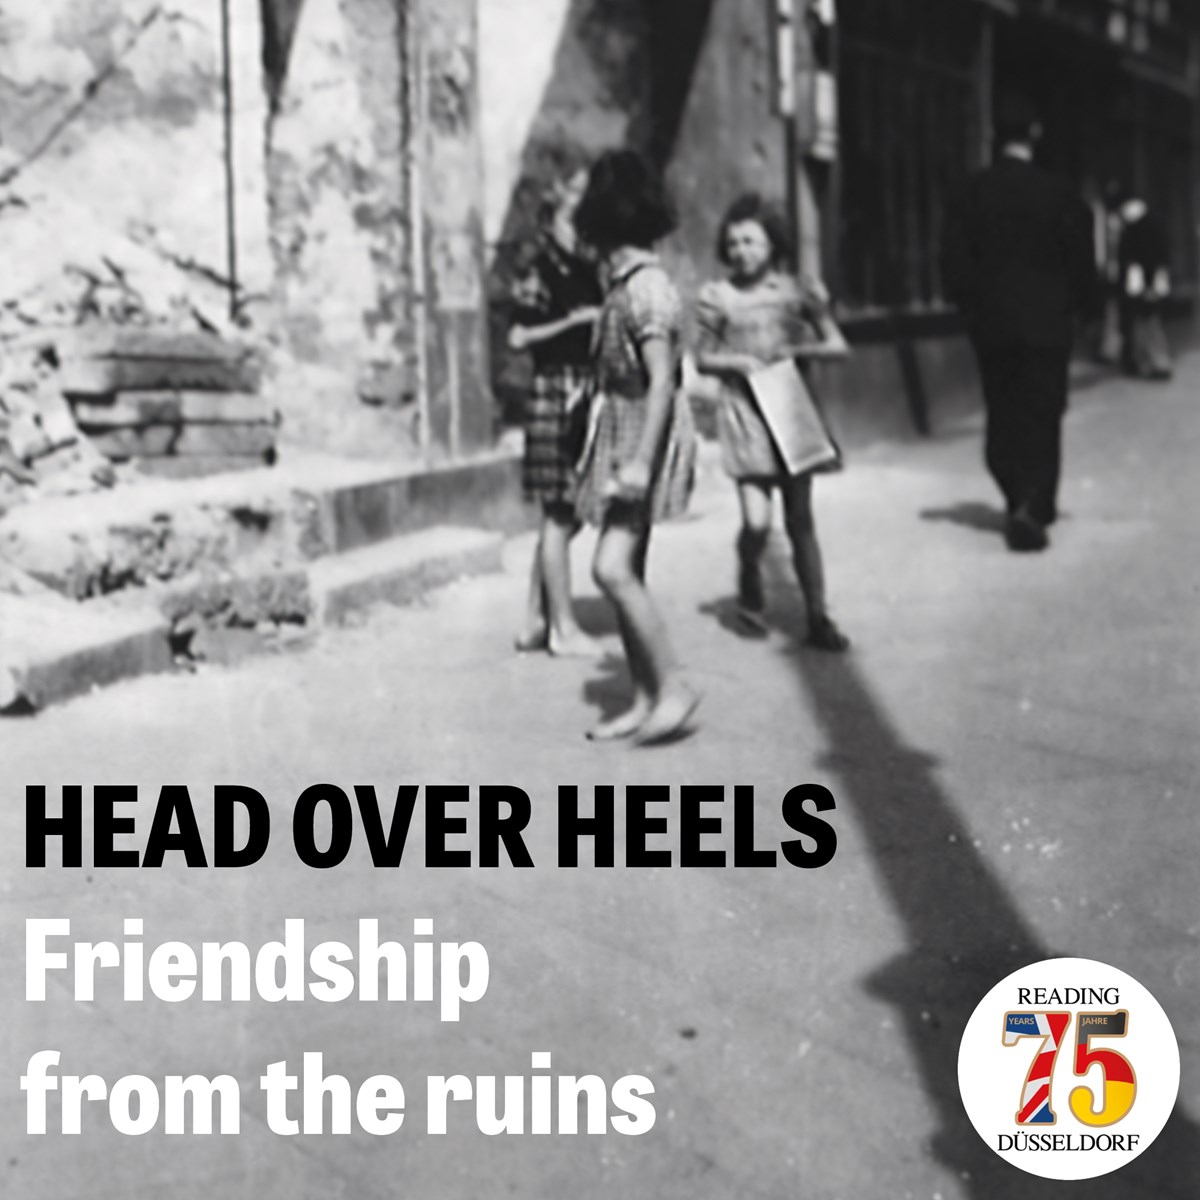 Head over Heels exhibition